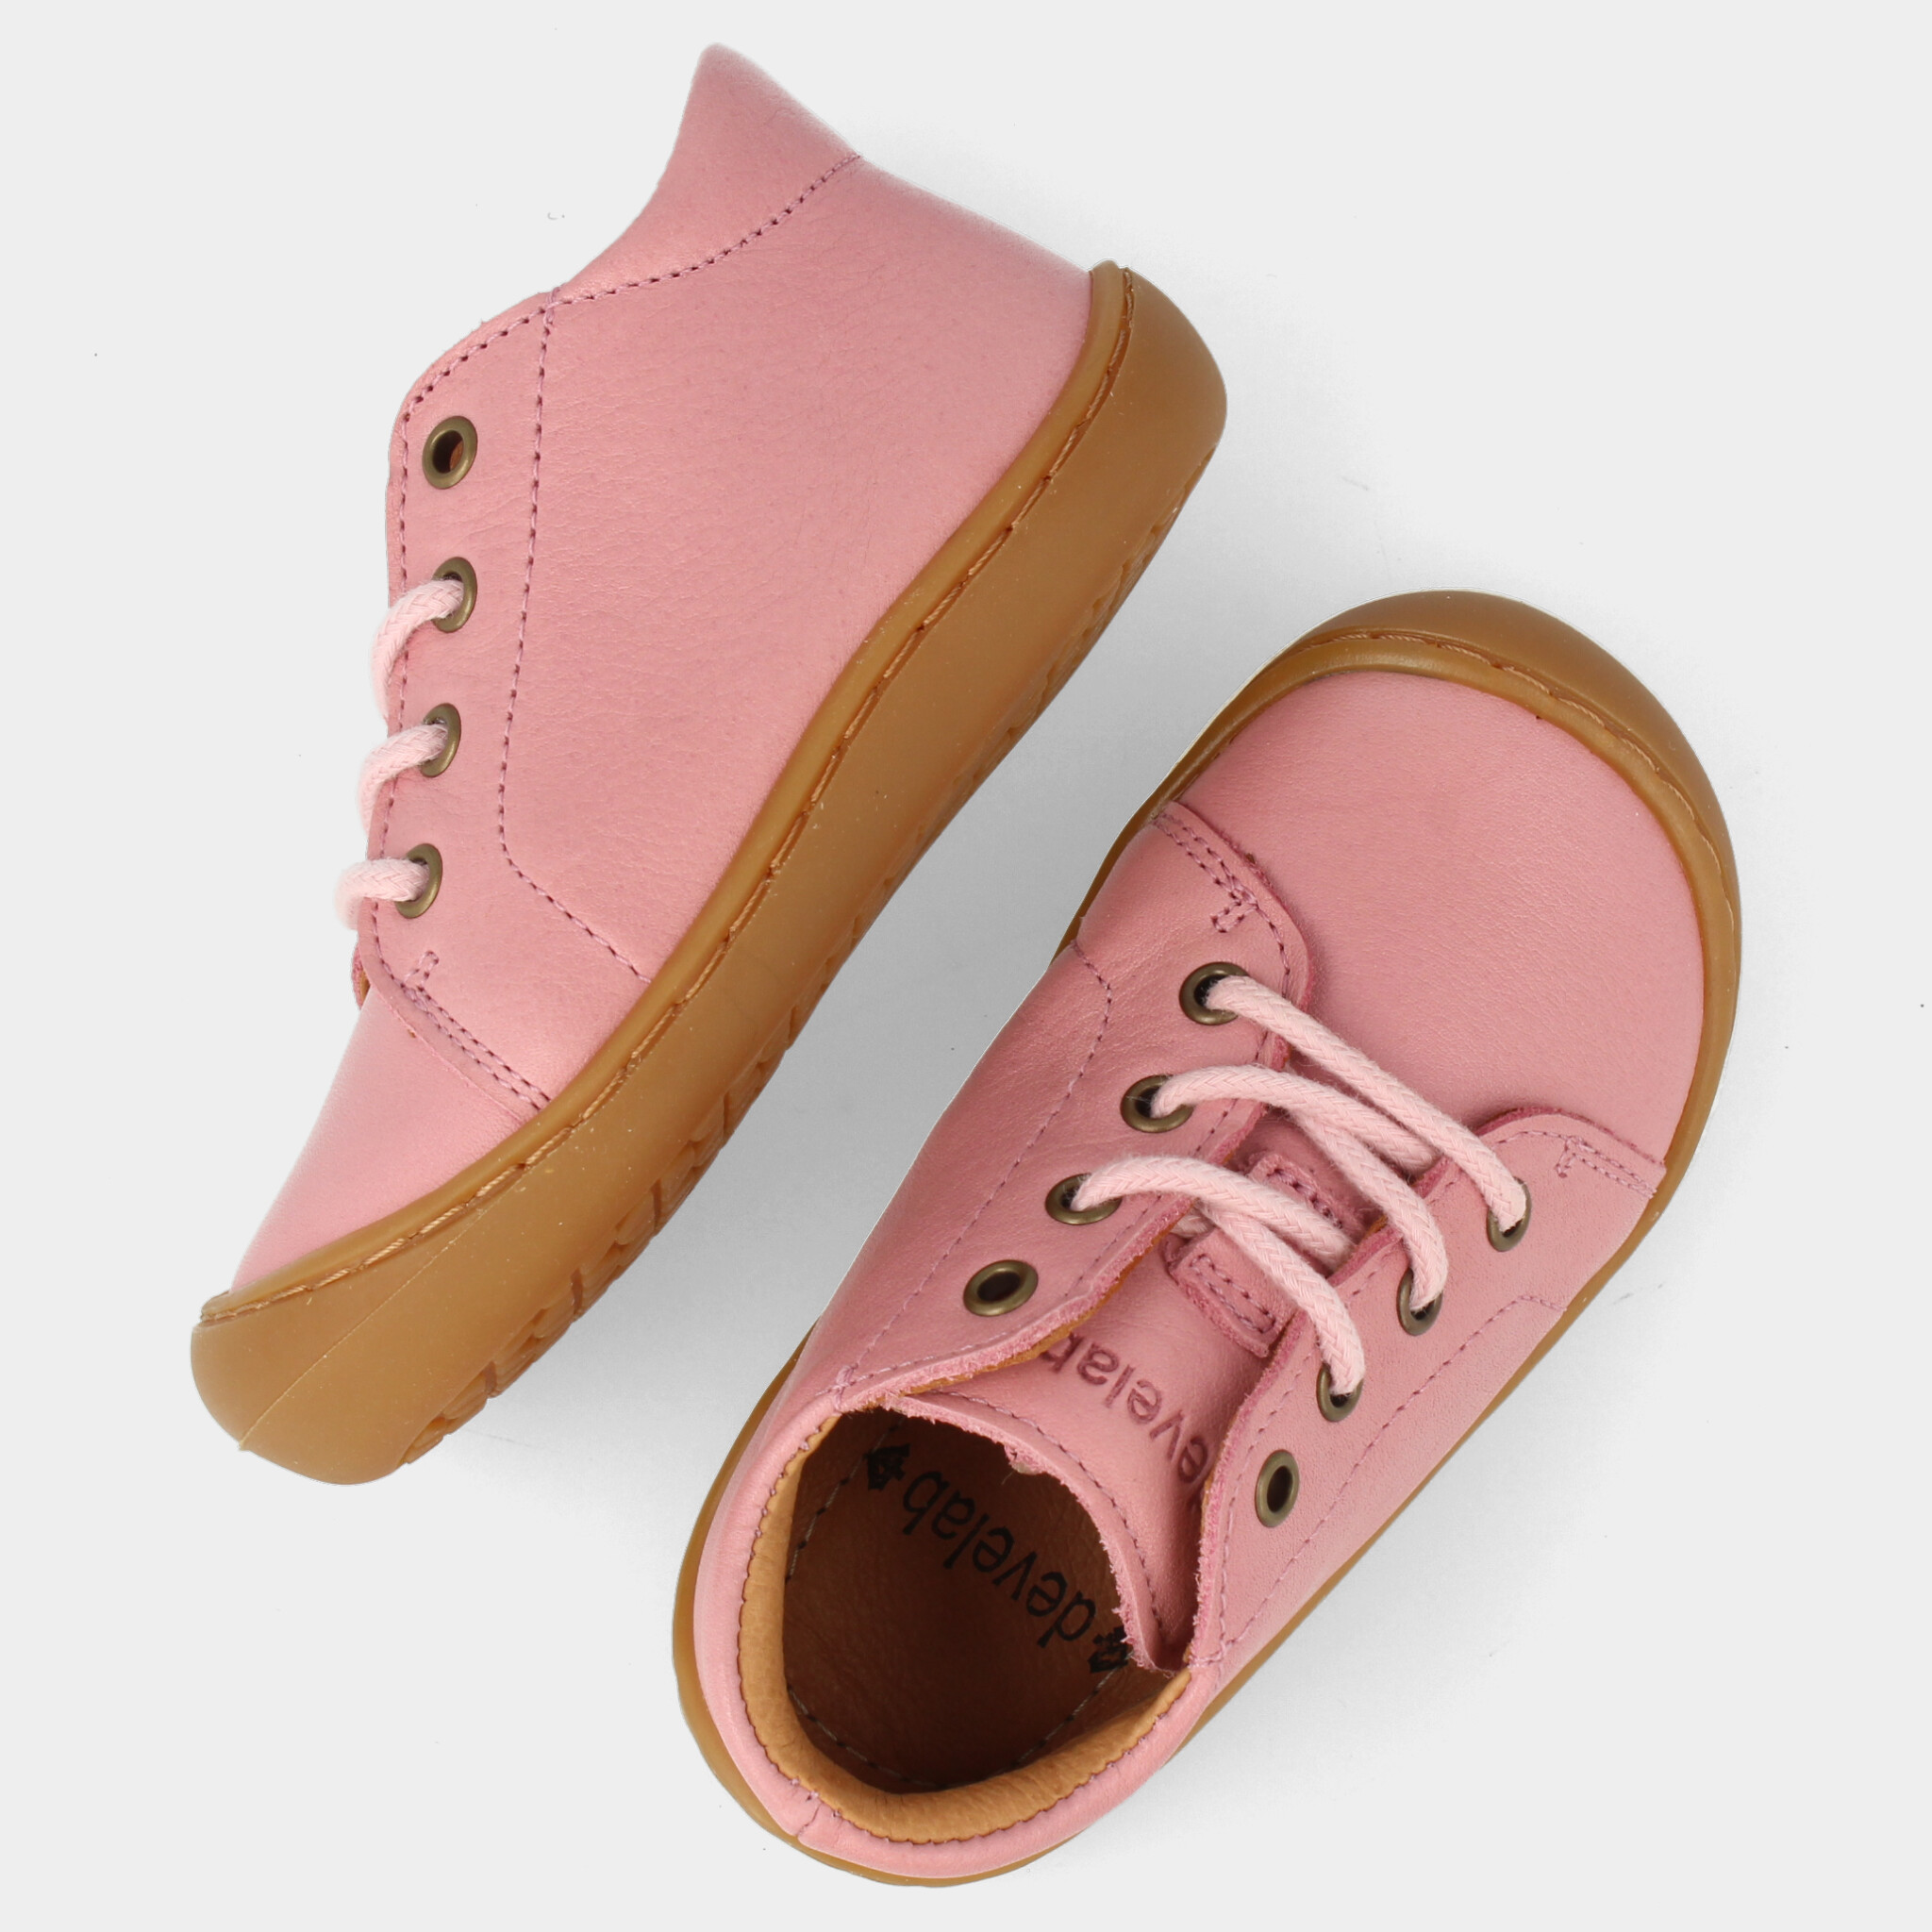 Roze Barefoot sneakers | 46201